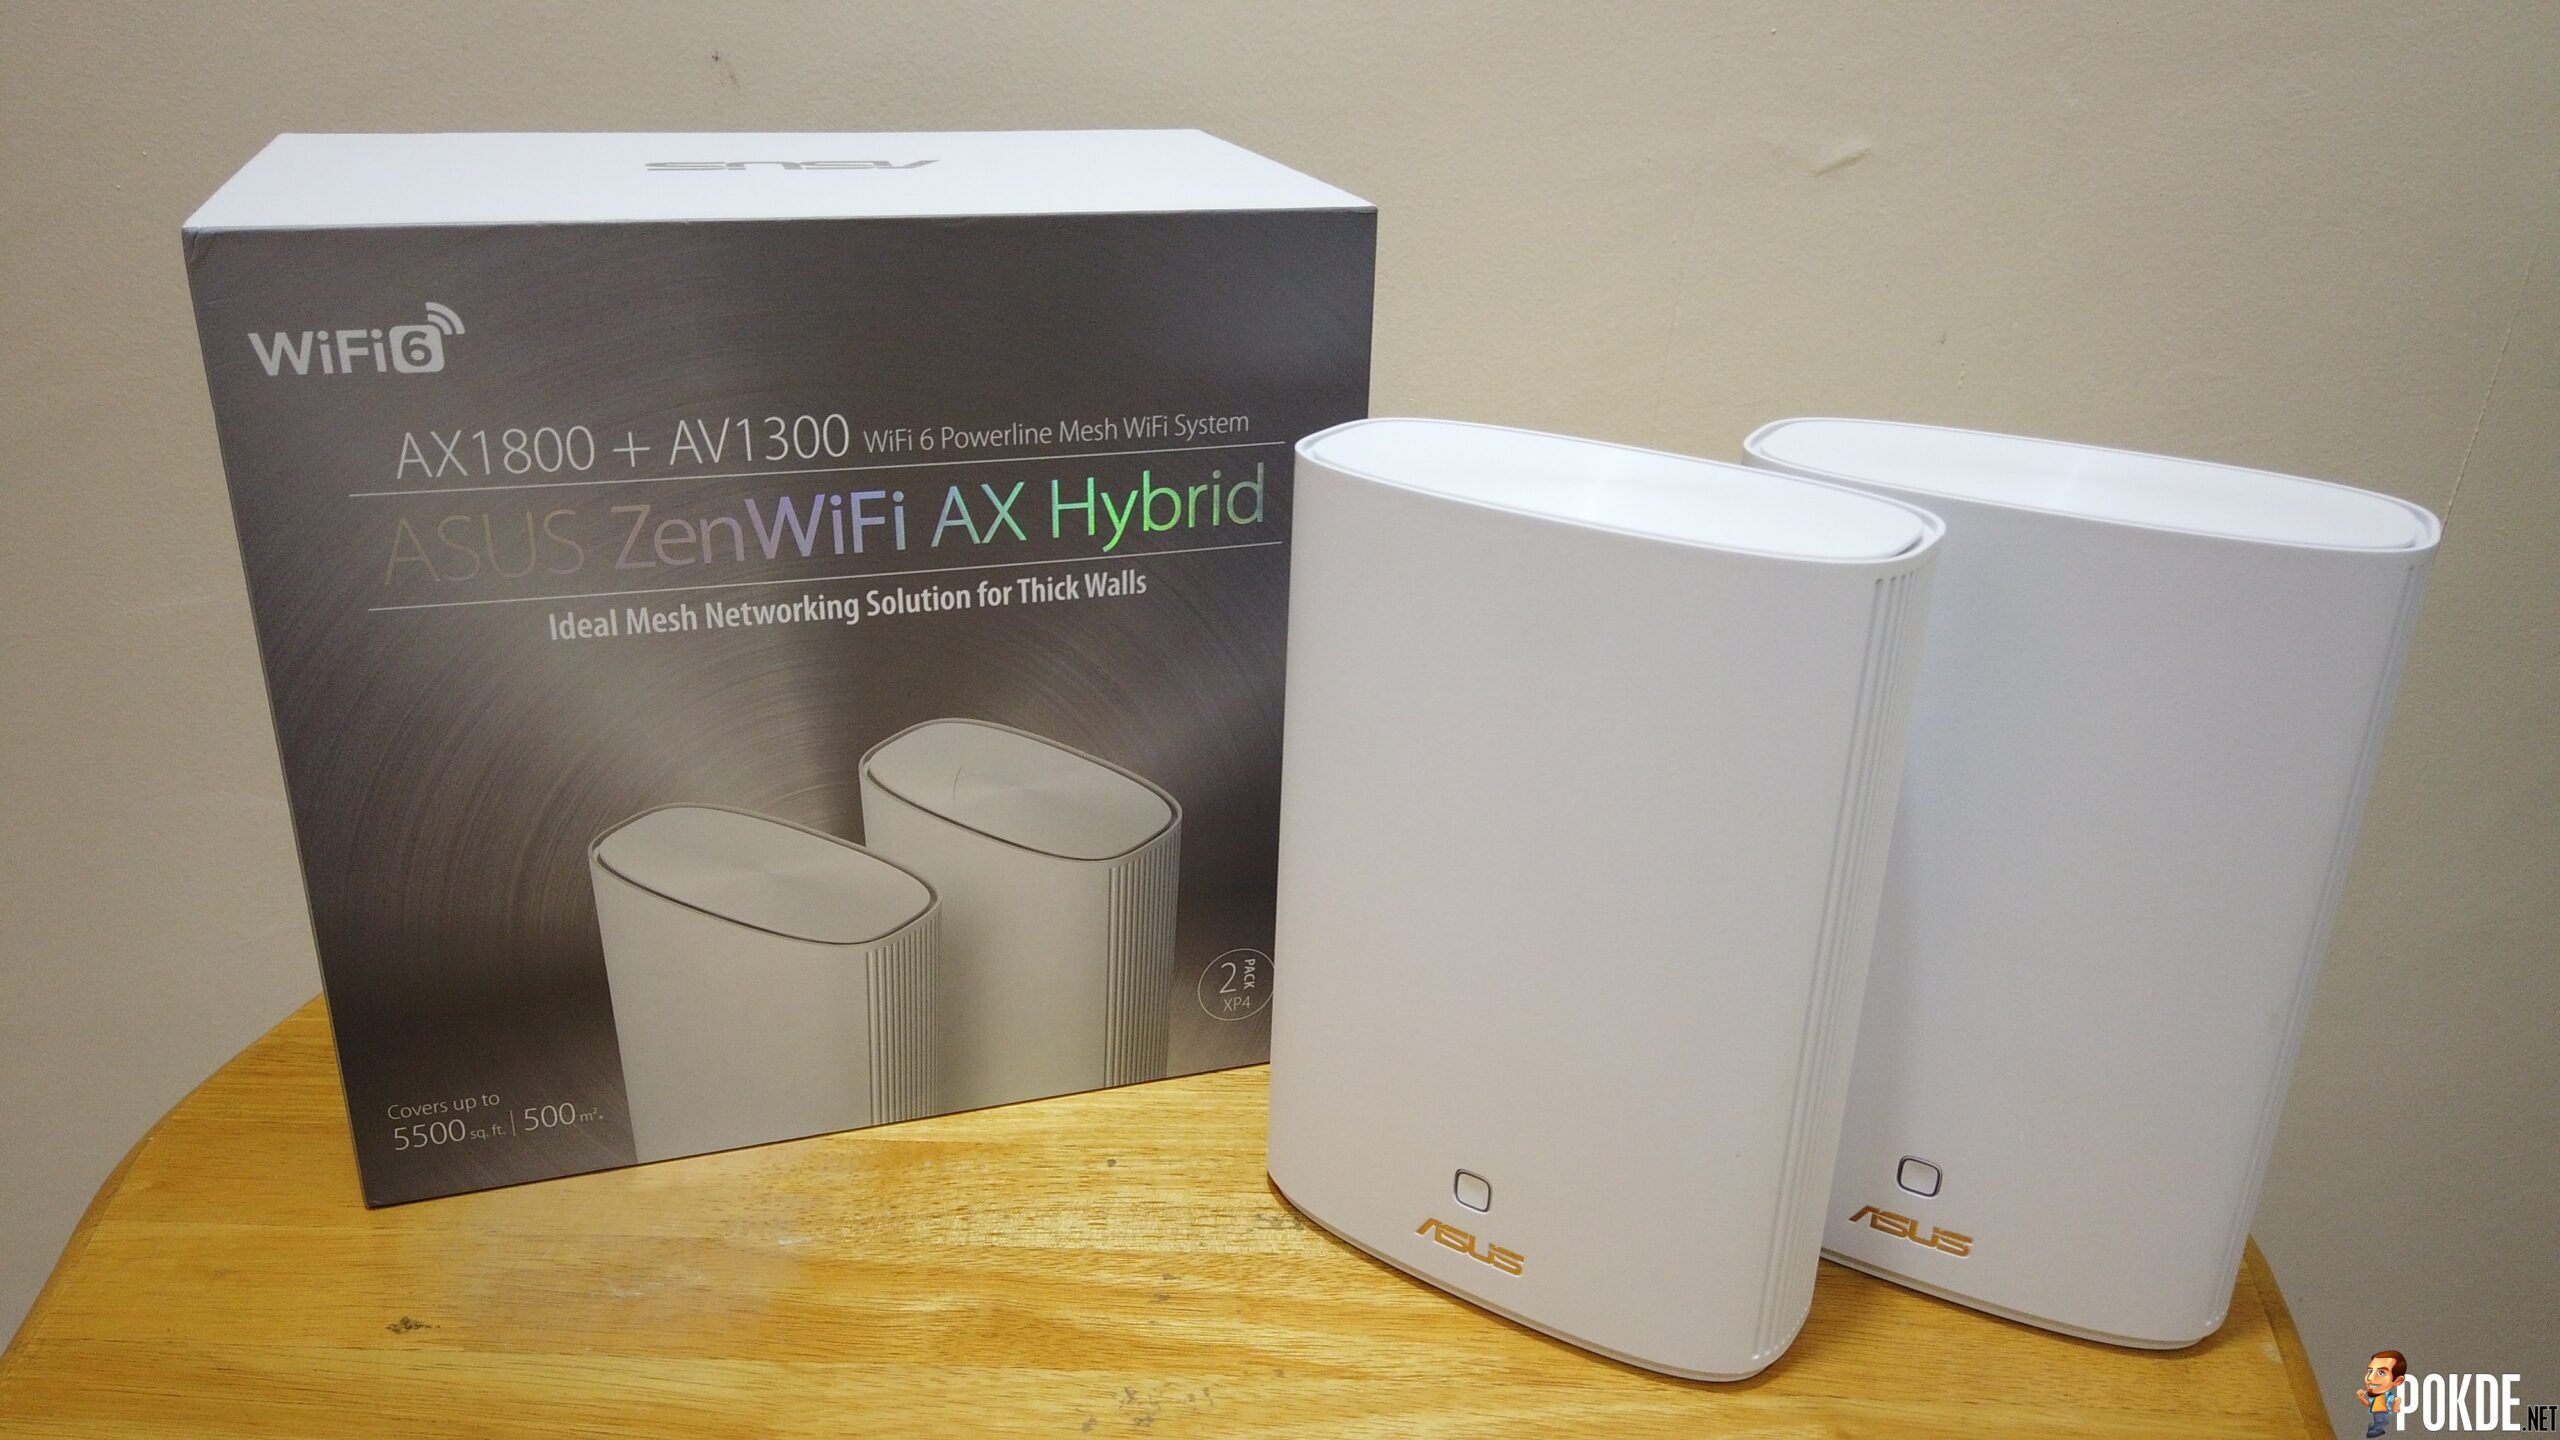 ASUS ZenWiFi AX Hybrid (XP4) Mesh Review - 5,500 sqft Wi-Fi Coverage 29